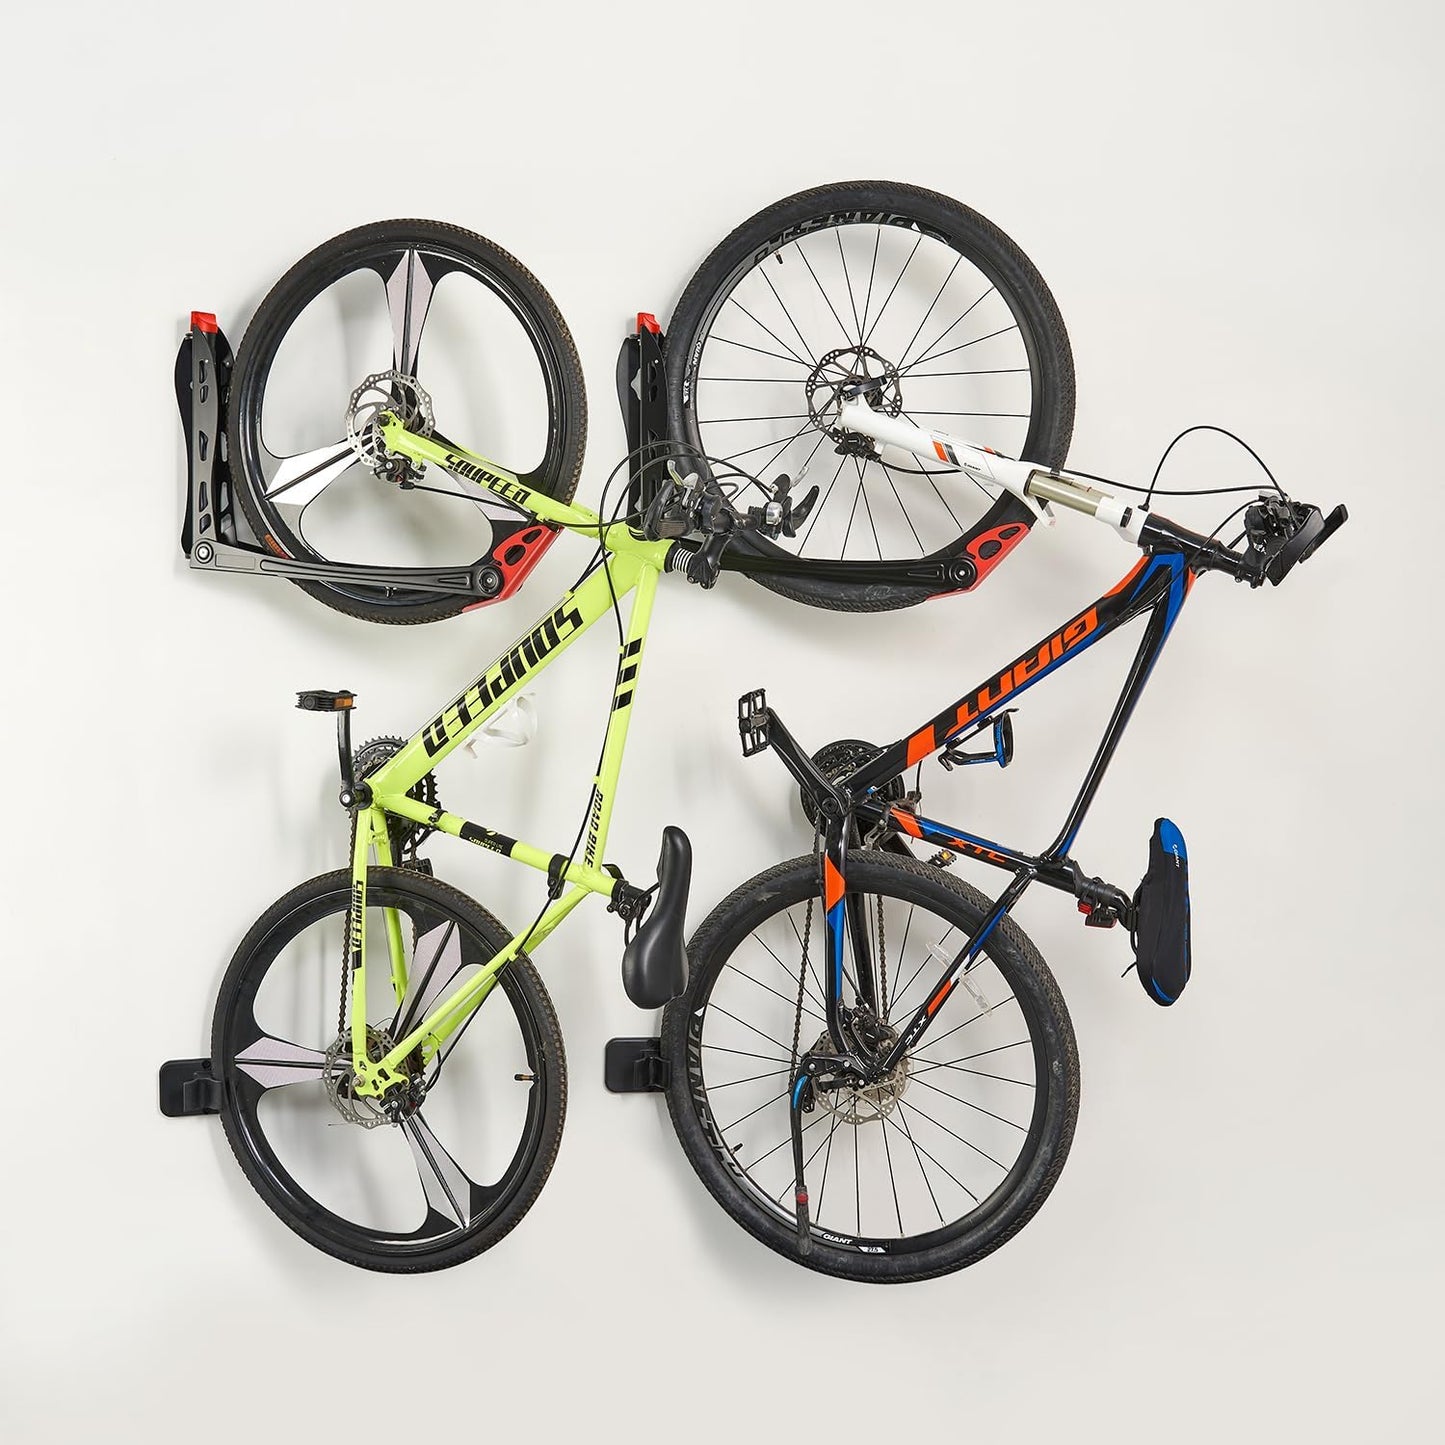 Bike Racks, No Lifting, Wall Mounted Bike Storage with Swivel, 4 Pack